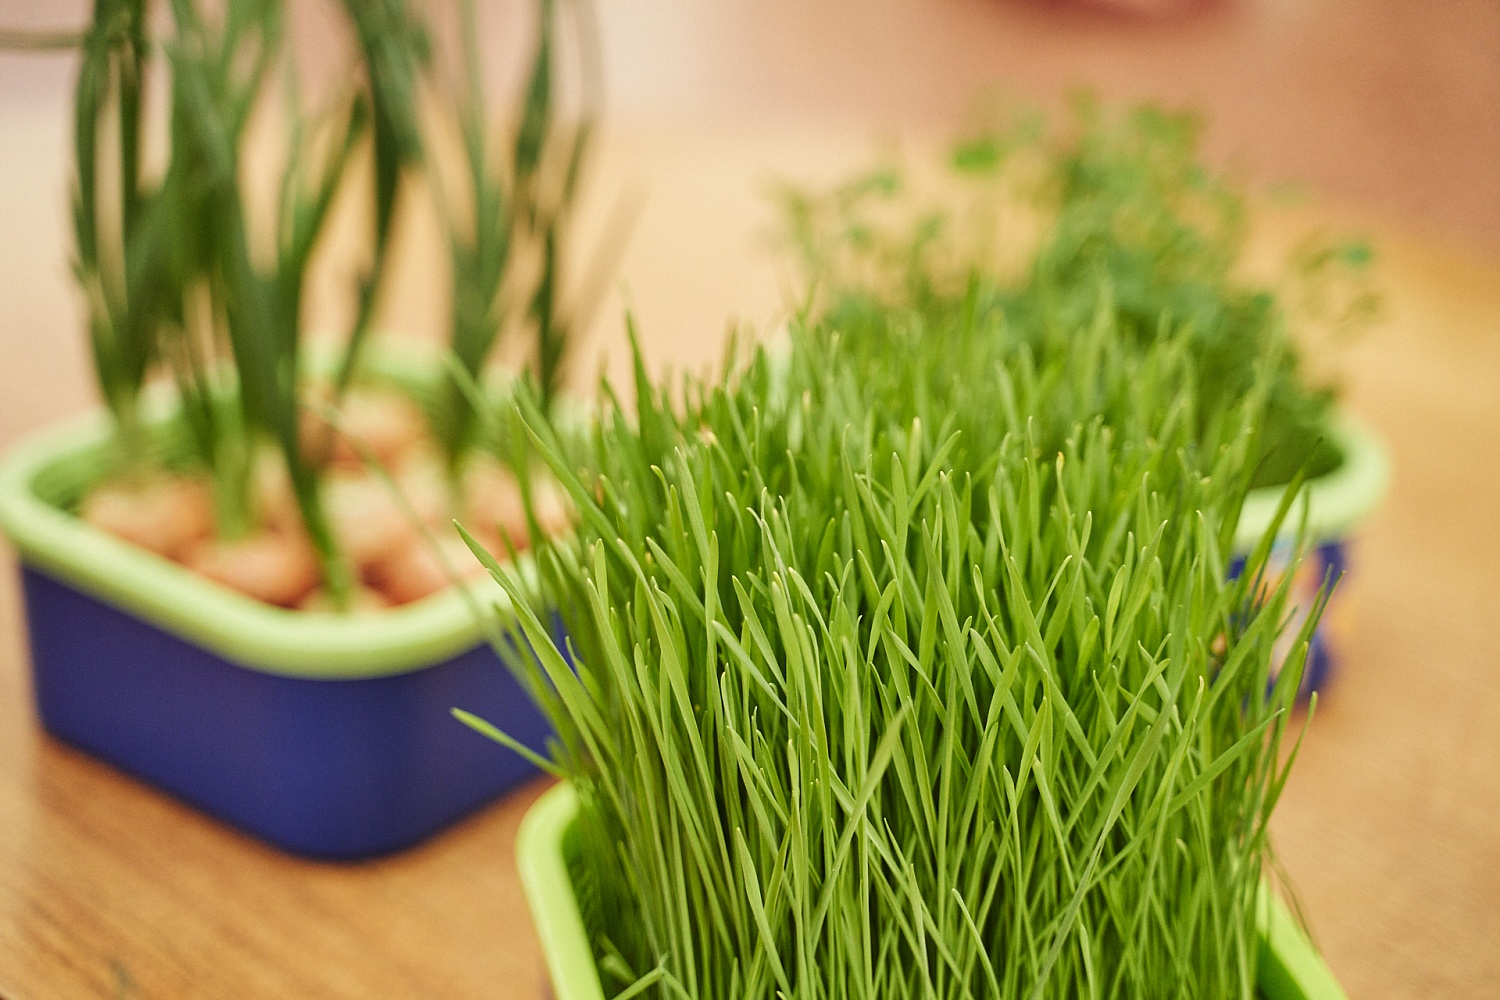 Как вырастить микрозелень в домашних условиях? Советы и рекомендации по проращиванию